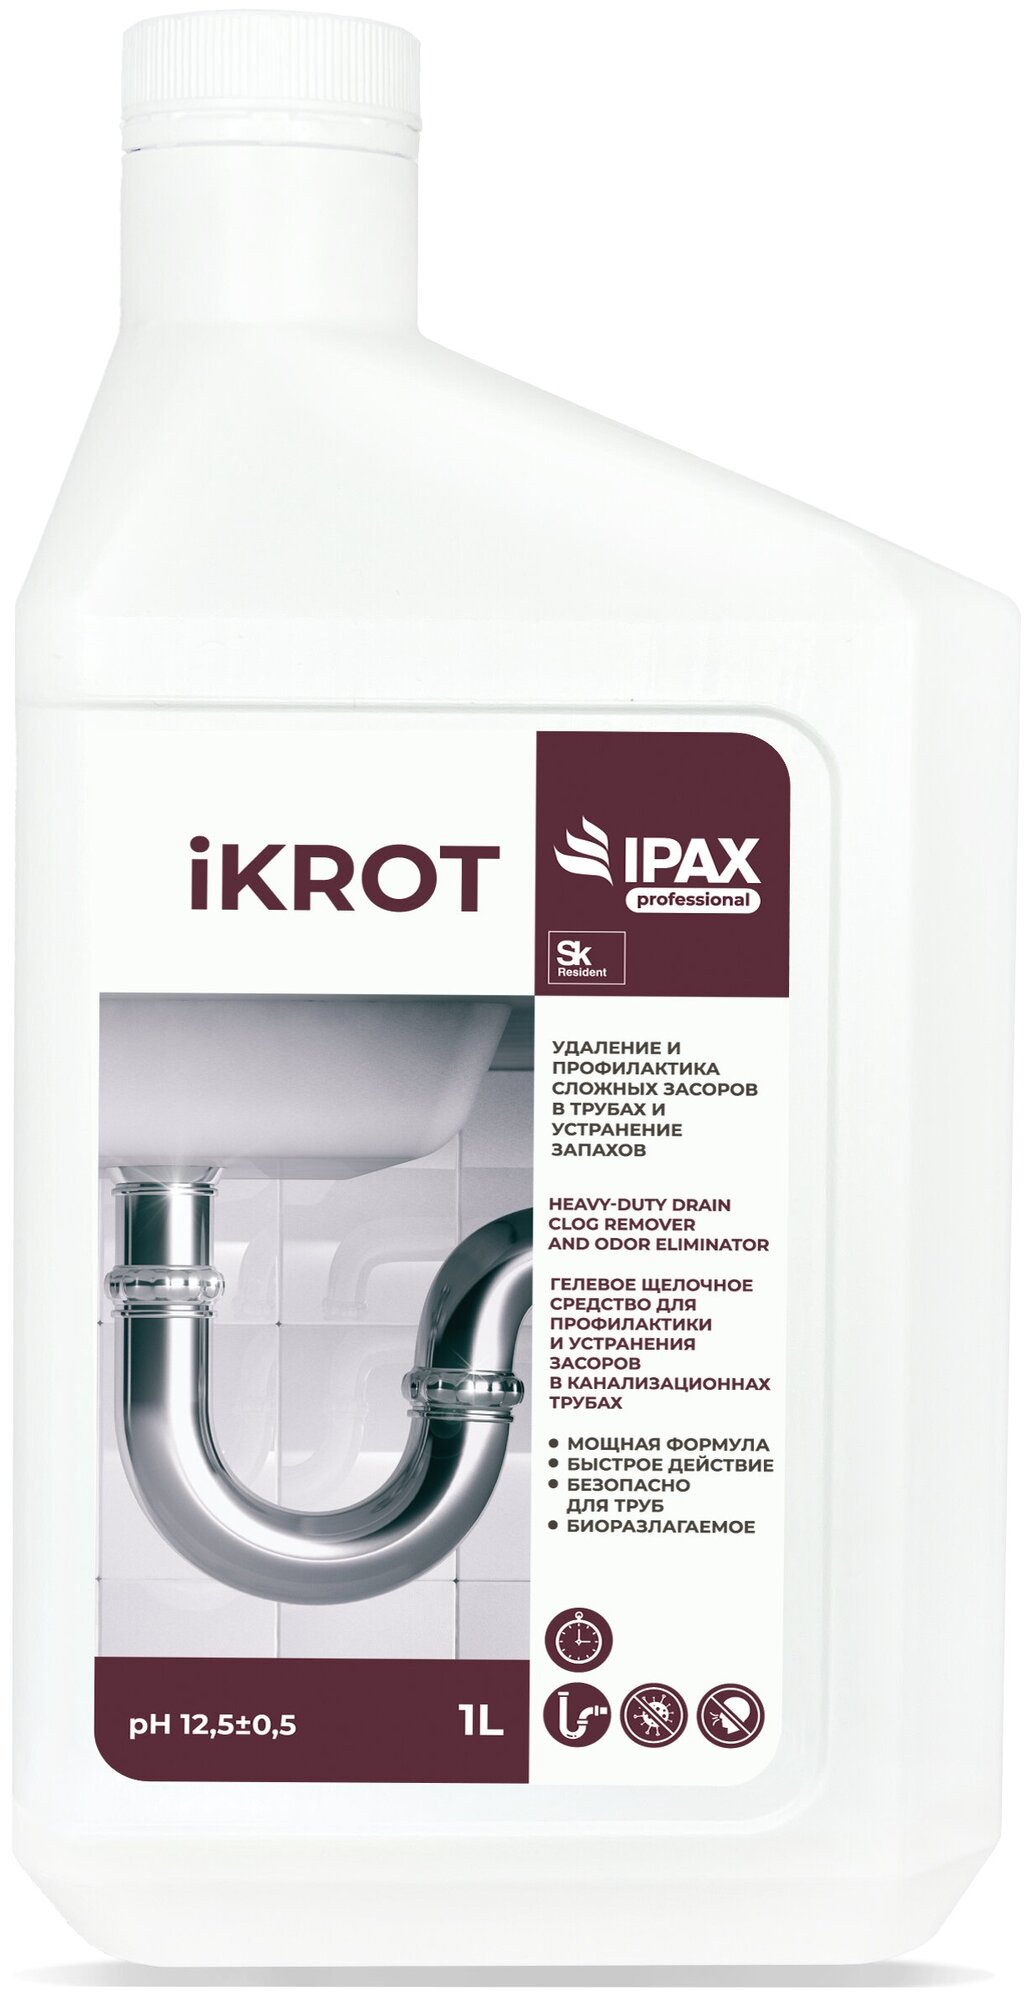 Средство от засоров iKrot моментальное удаление засора средство для прочистки труб гель для удаления засоров на кухне в ванной туалете 1л